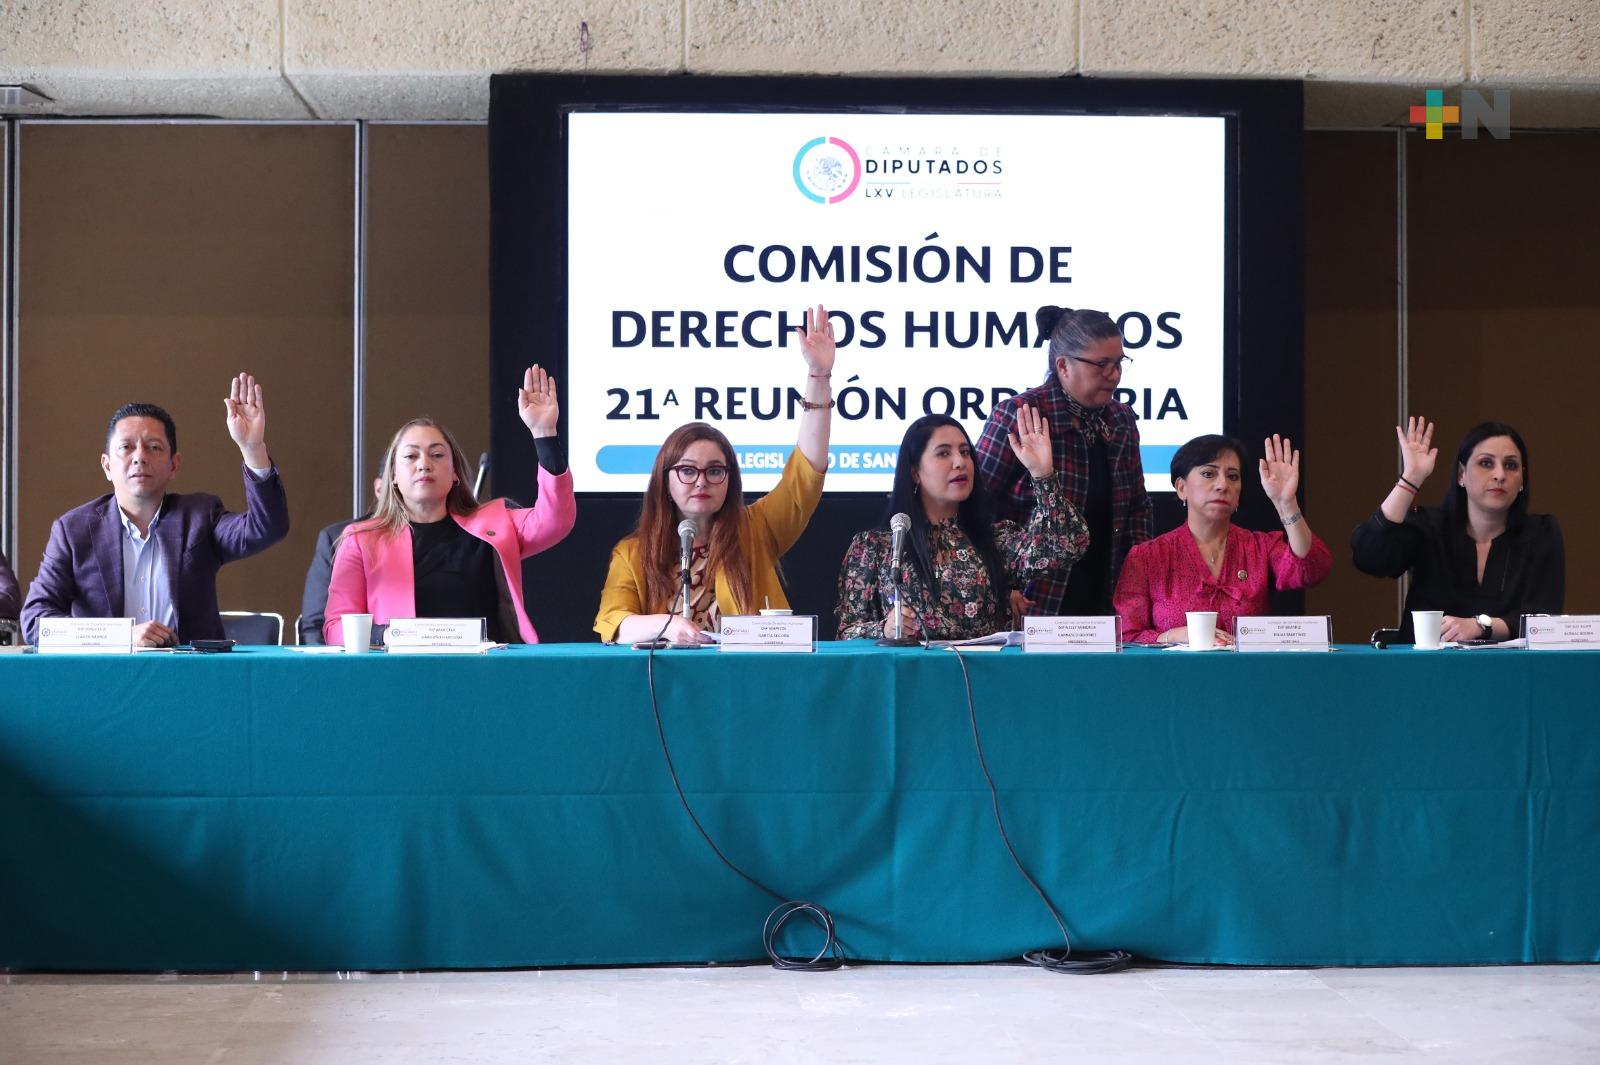 Comisión avala reformas sobre violencia en redes sociales y respeto a derechos humanos en estancias migratorias